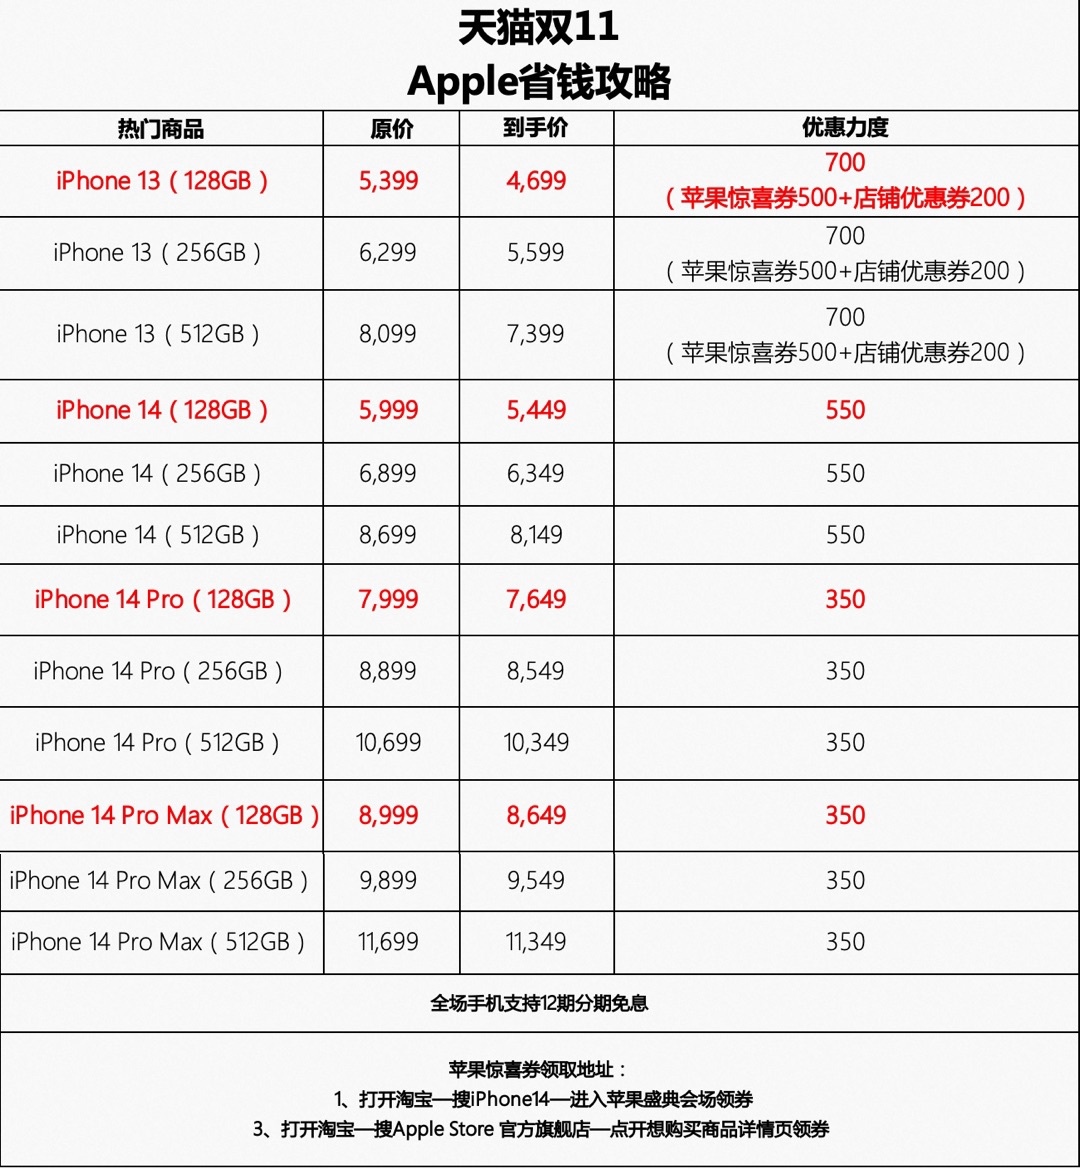 天猫双 11 买苹果 iPhone 14 Pro 首次减价 350 元，还支持 12 期分期免息